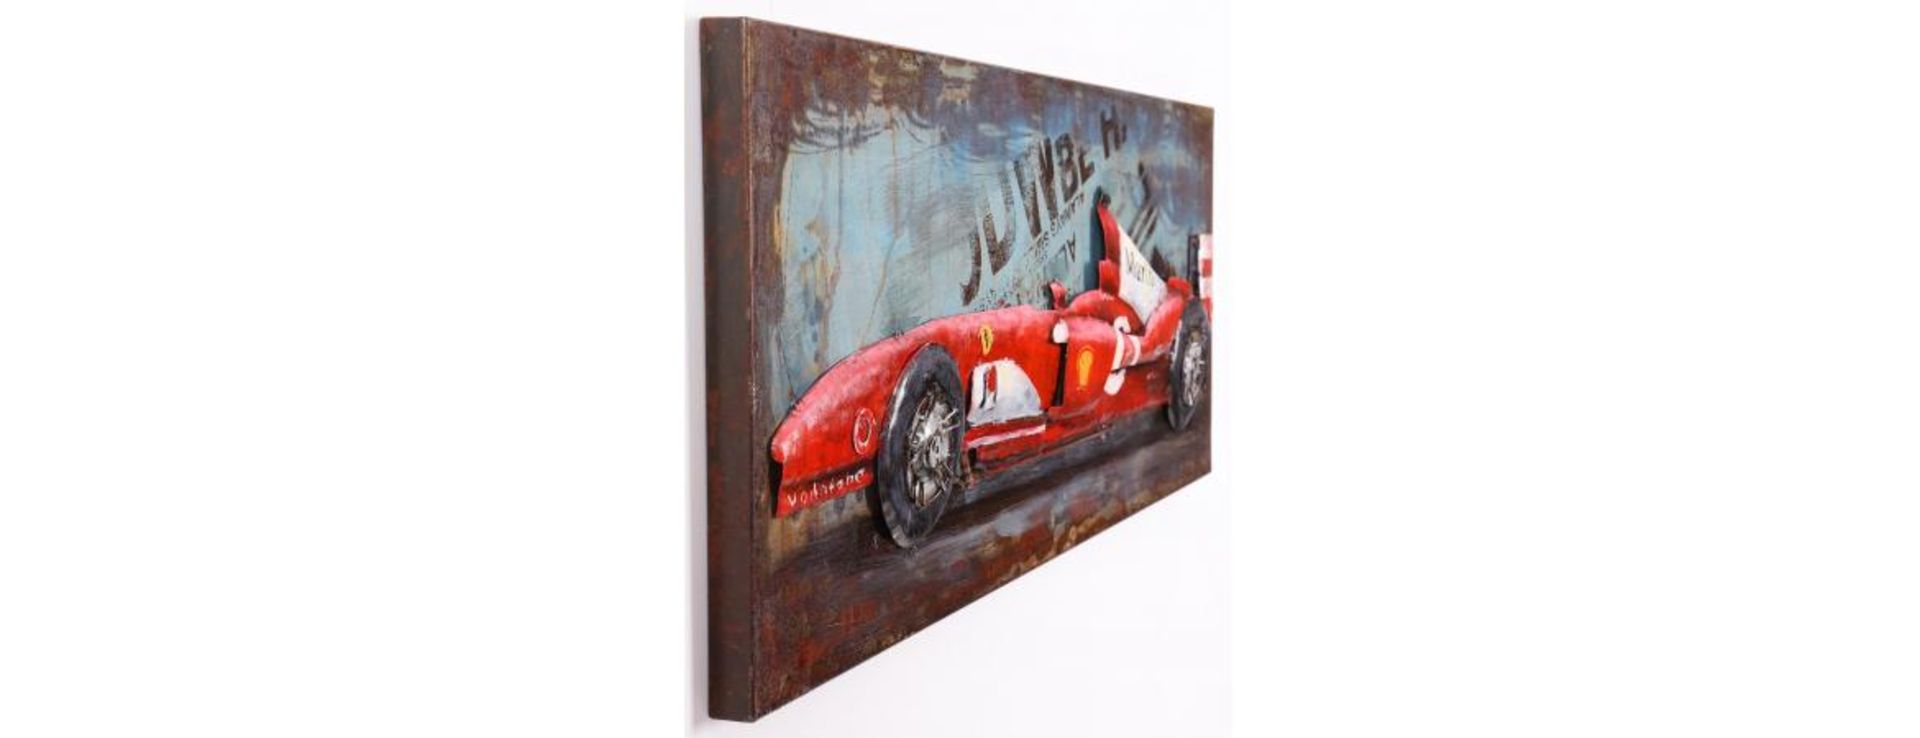 3D Metal Ferrari F1 Painting - Image 3 of 9